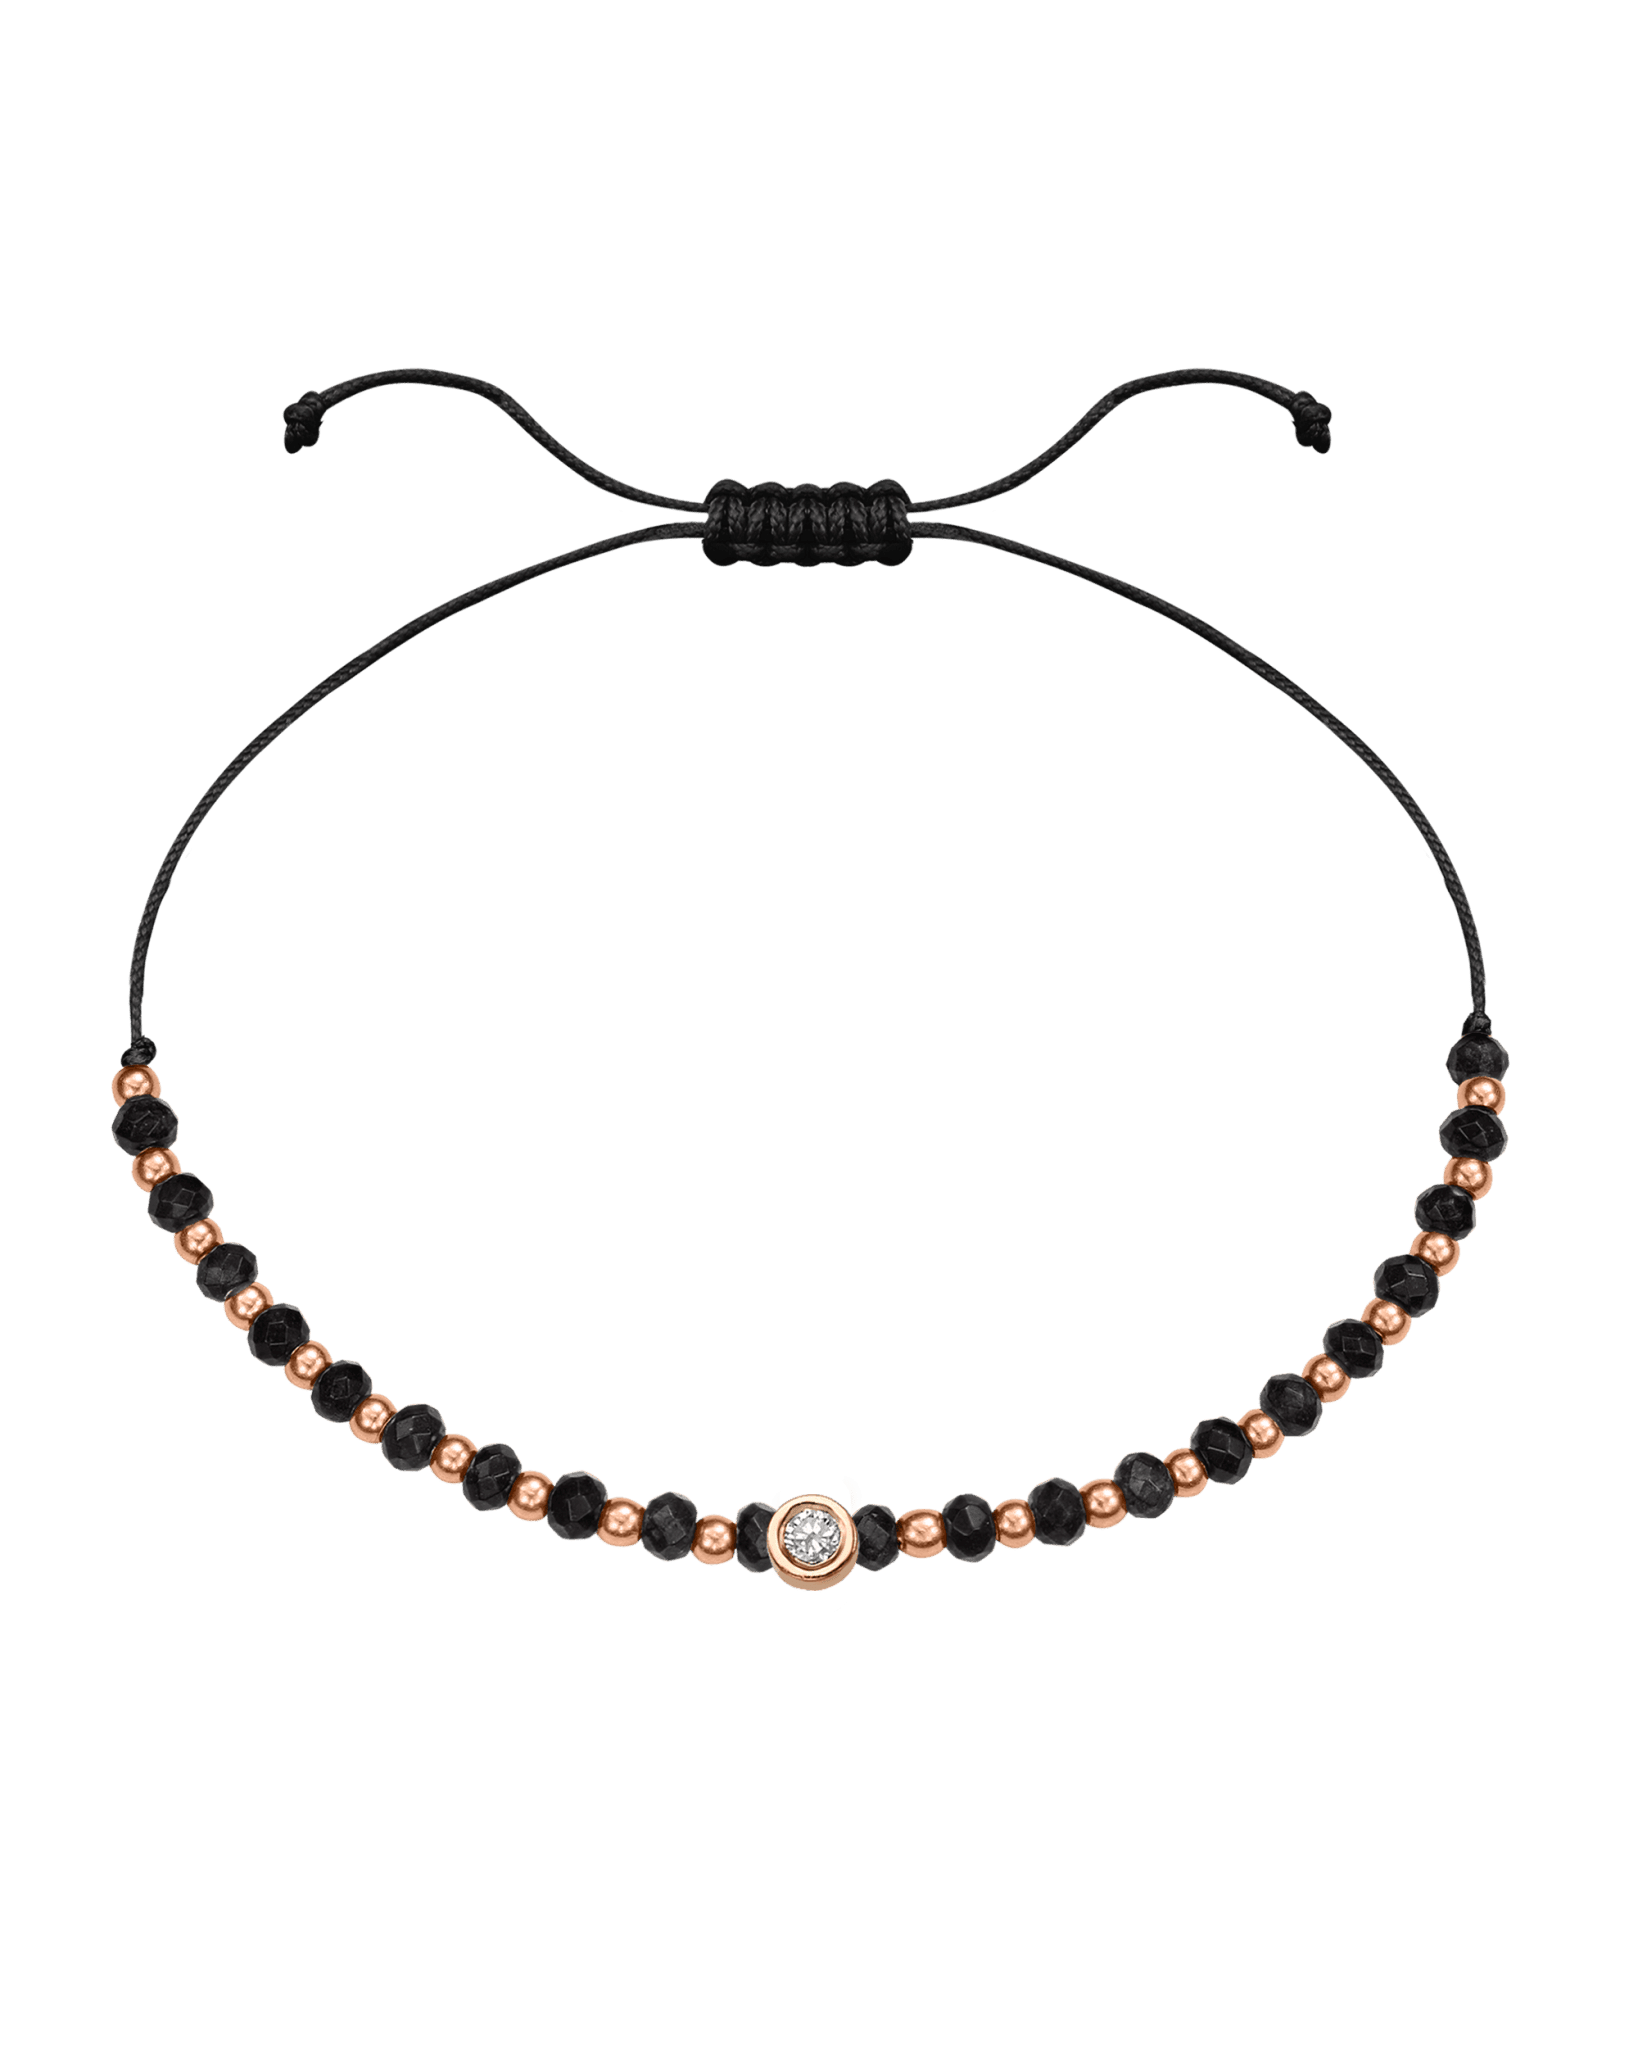 Black Onyx Gemstone String of Love Bracelet for Protection - 14K Rose Gold Bracelets 14K Solid Gold Black Medium: 0.04ct 